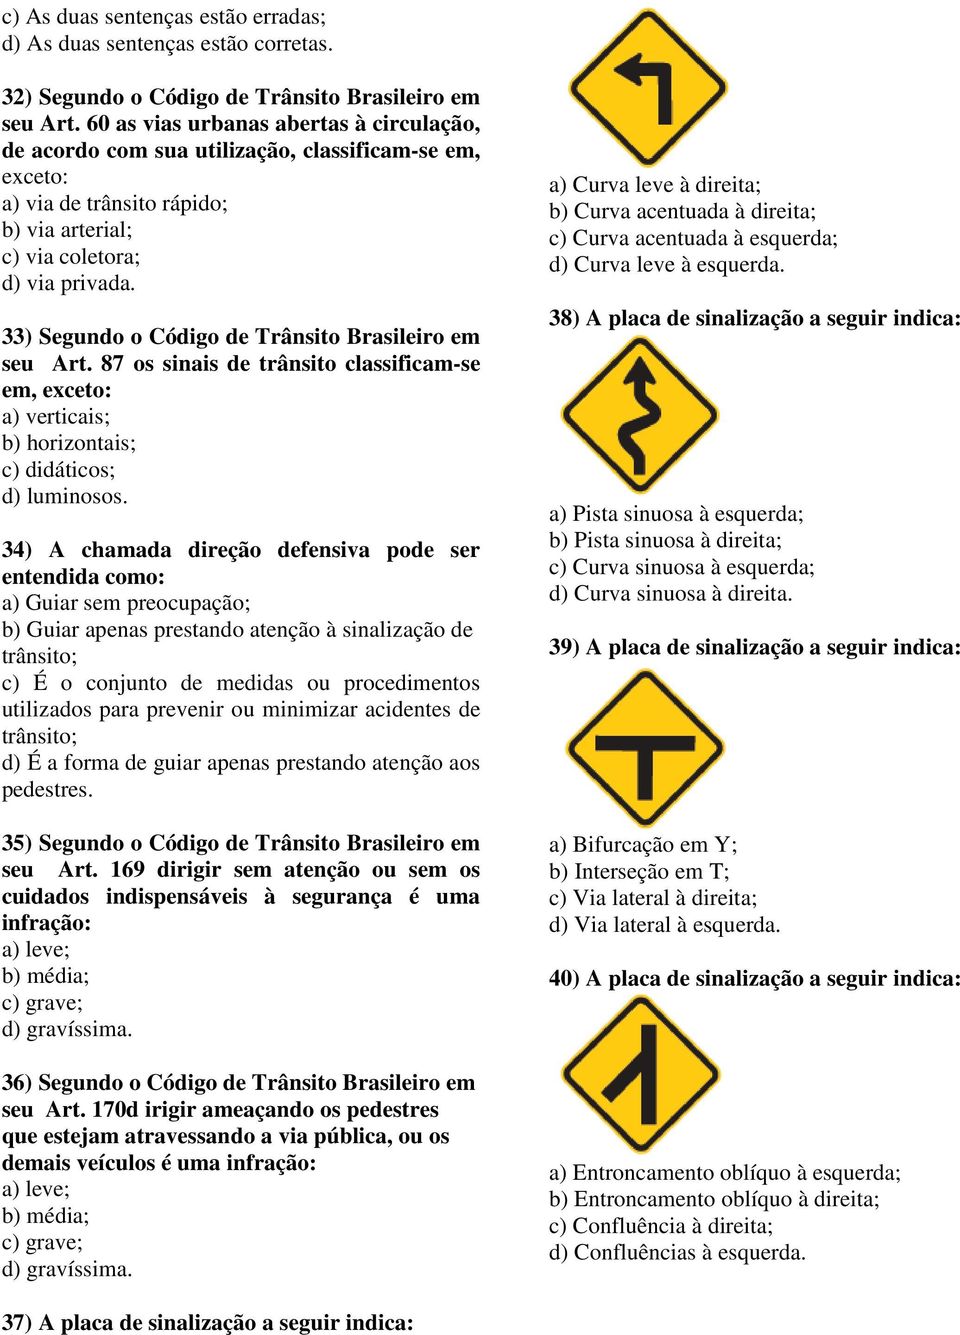 33) Segundo o Código de Trânsito Brasileiro em seu Art. 87 os sinais de trânsito classificam-se em, exceto: a) verticais; b) horizontais; c) didáticos; d) luminosos.